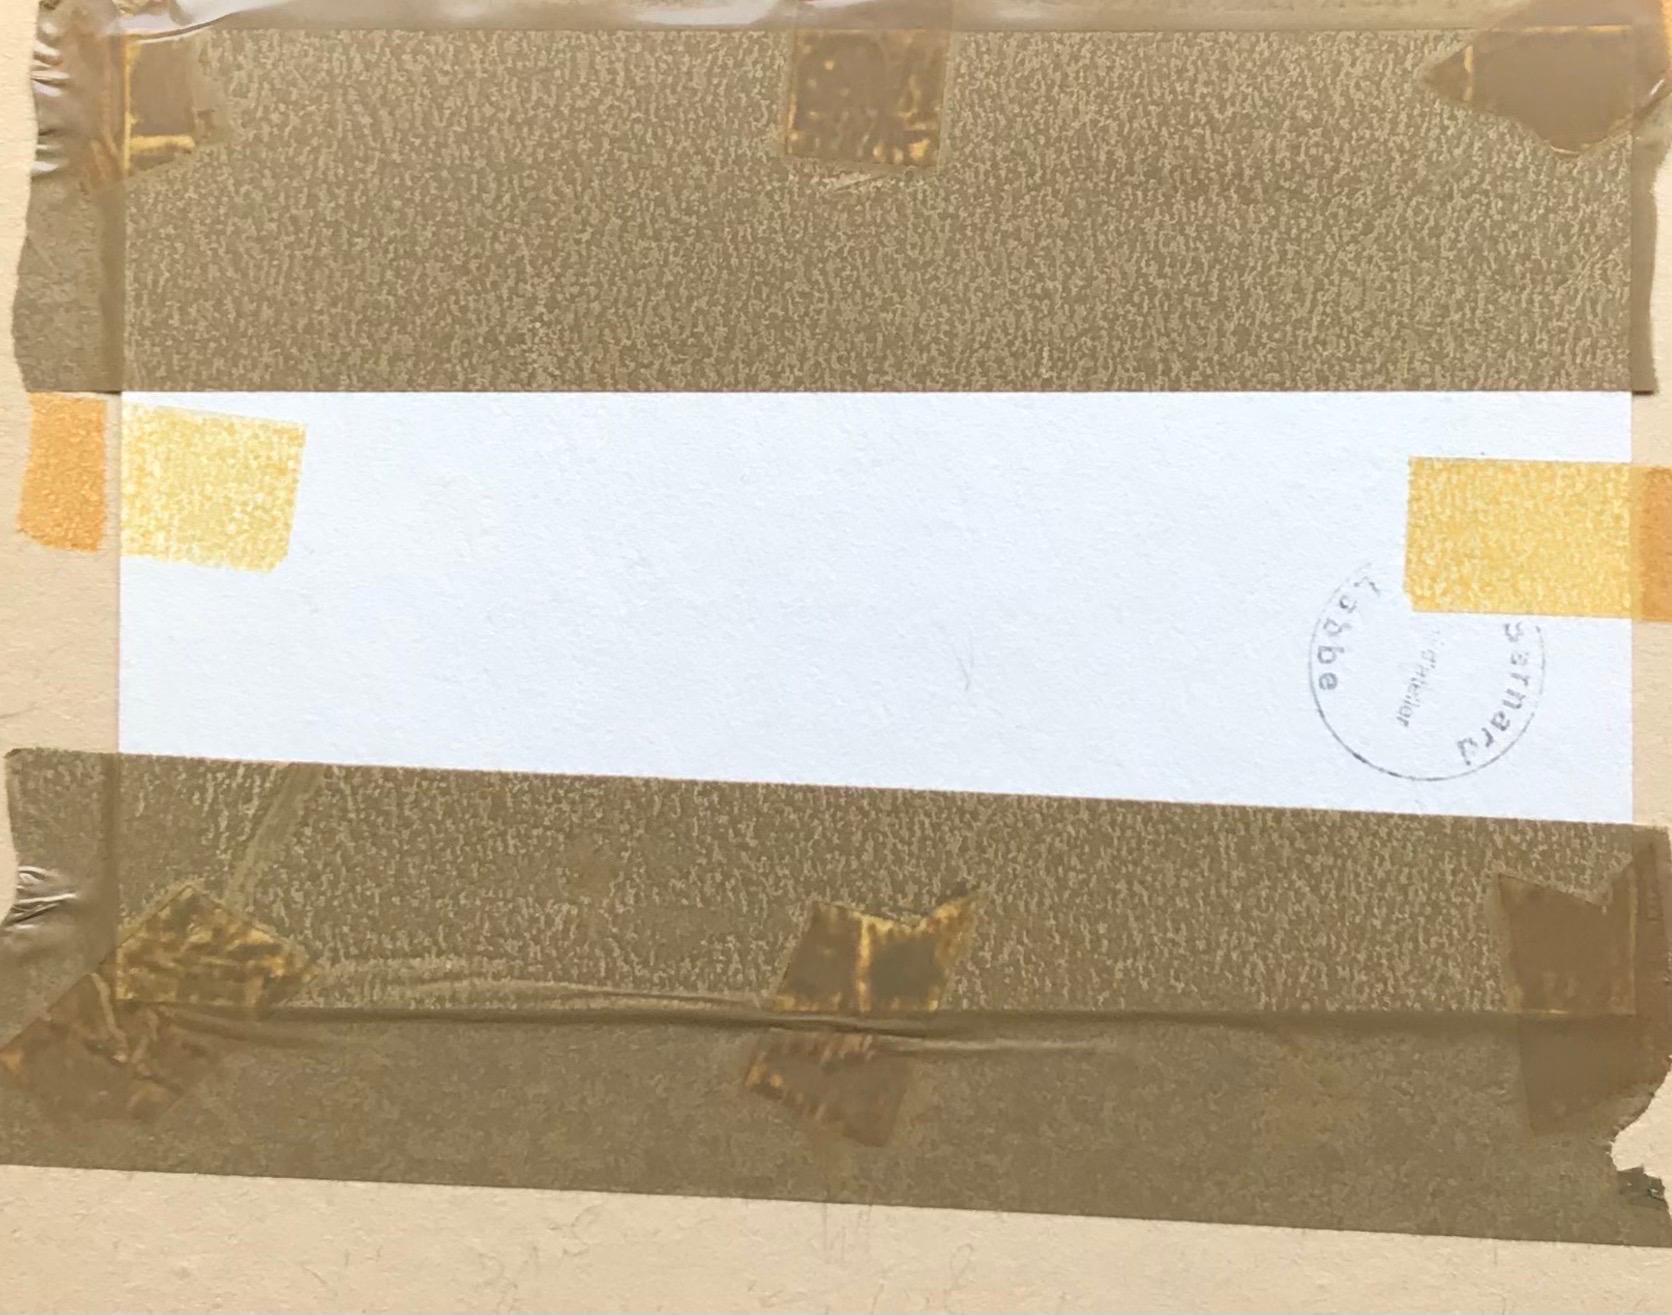 Französische Landschaft
von Bernard Labbe (Französisch, Mitte 20. Jahrhundert)
original-Aquarell mit Kugelschreiber auf Künstlerpapier, gerahmt mit weißem Karton
verso gestempelt
größe: 7 x 8,25 Zoll
zustand: sehr gut und genussbereit. 

provenienz: